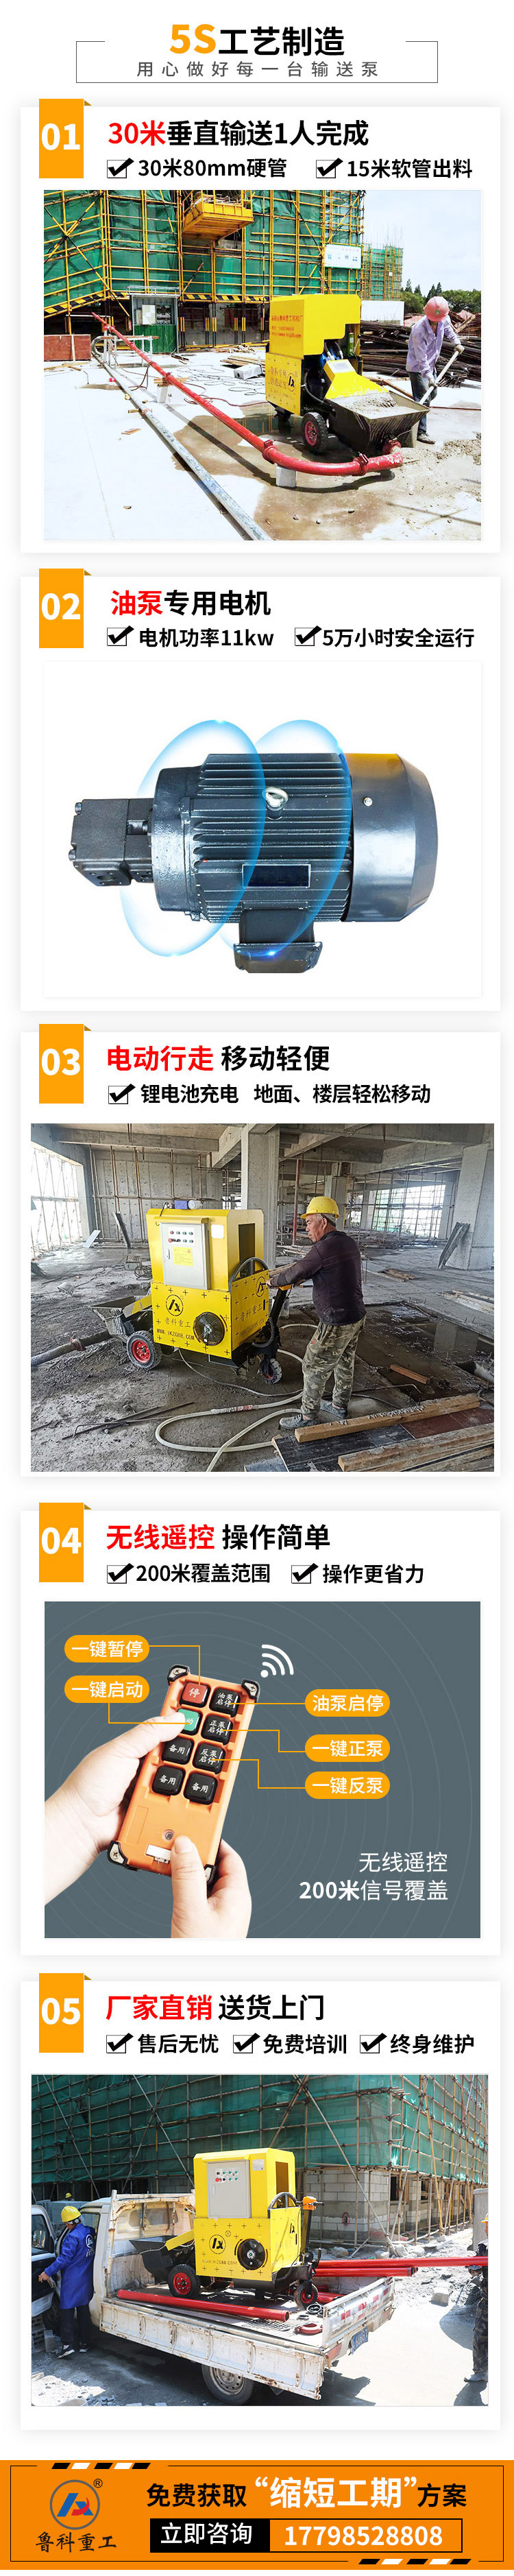 宁波哪里有卖小型混凝土输送泵.jpg